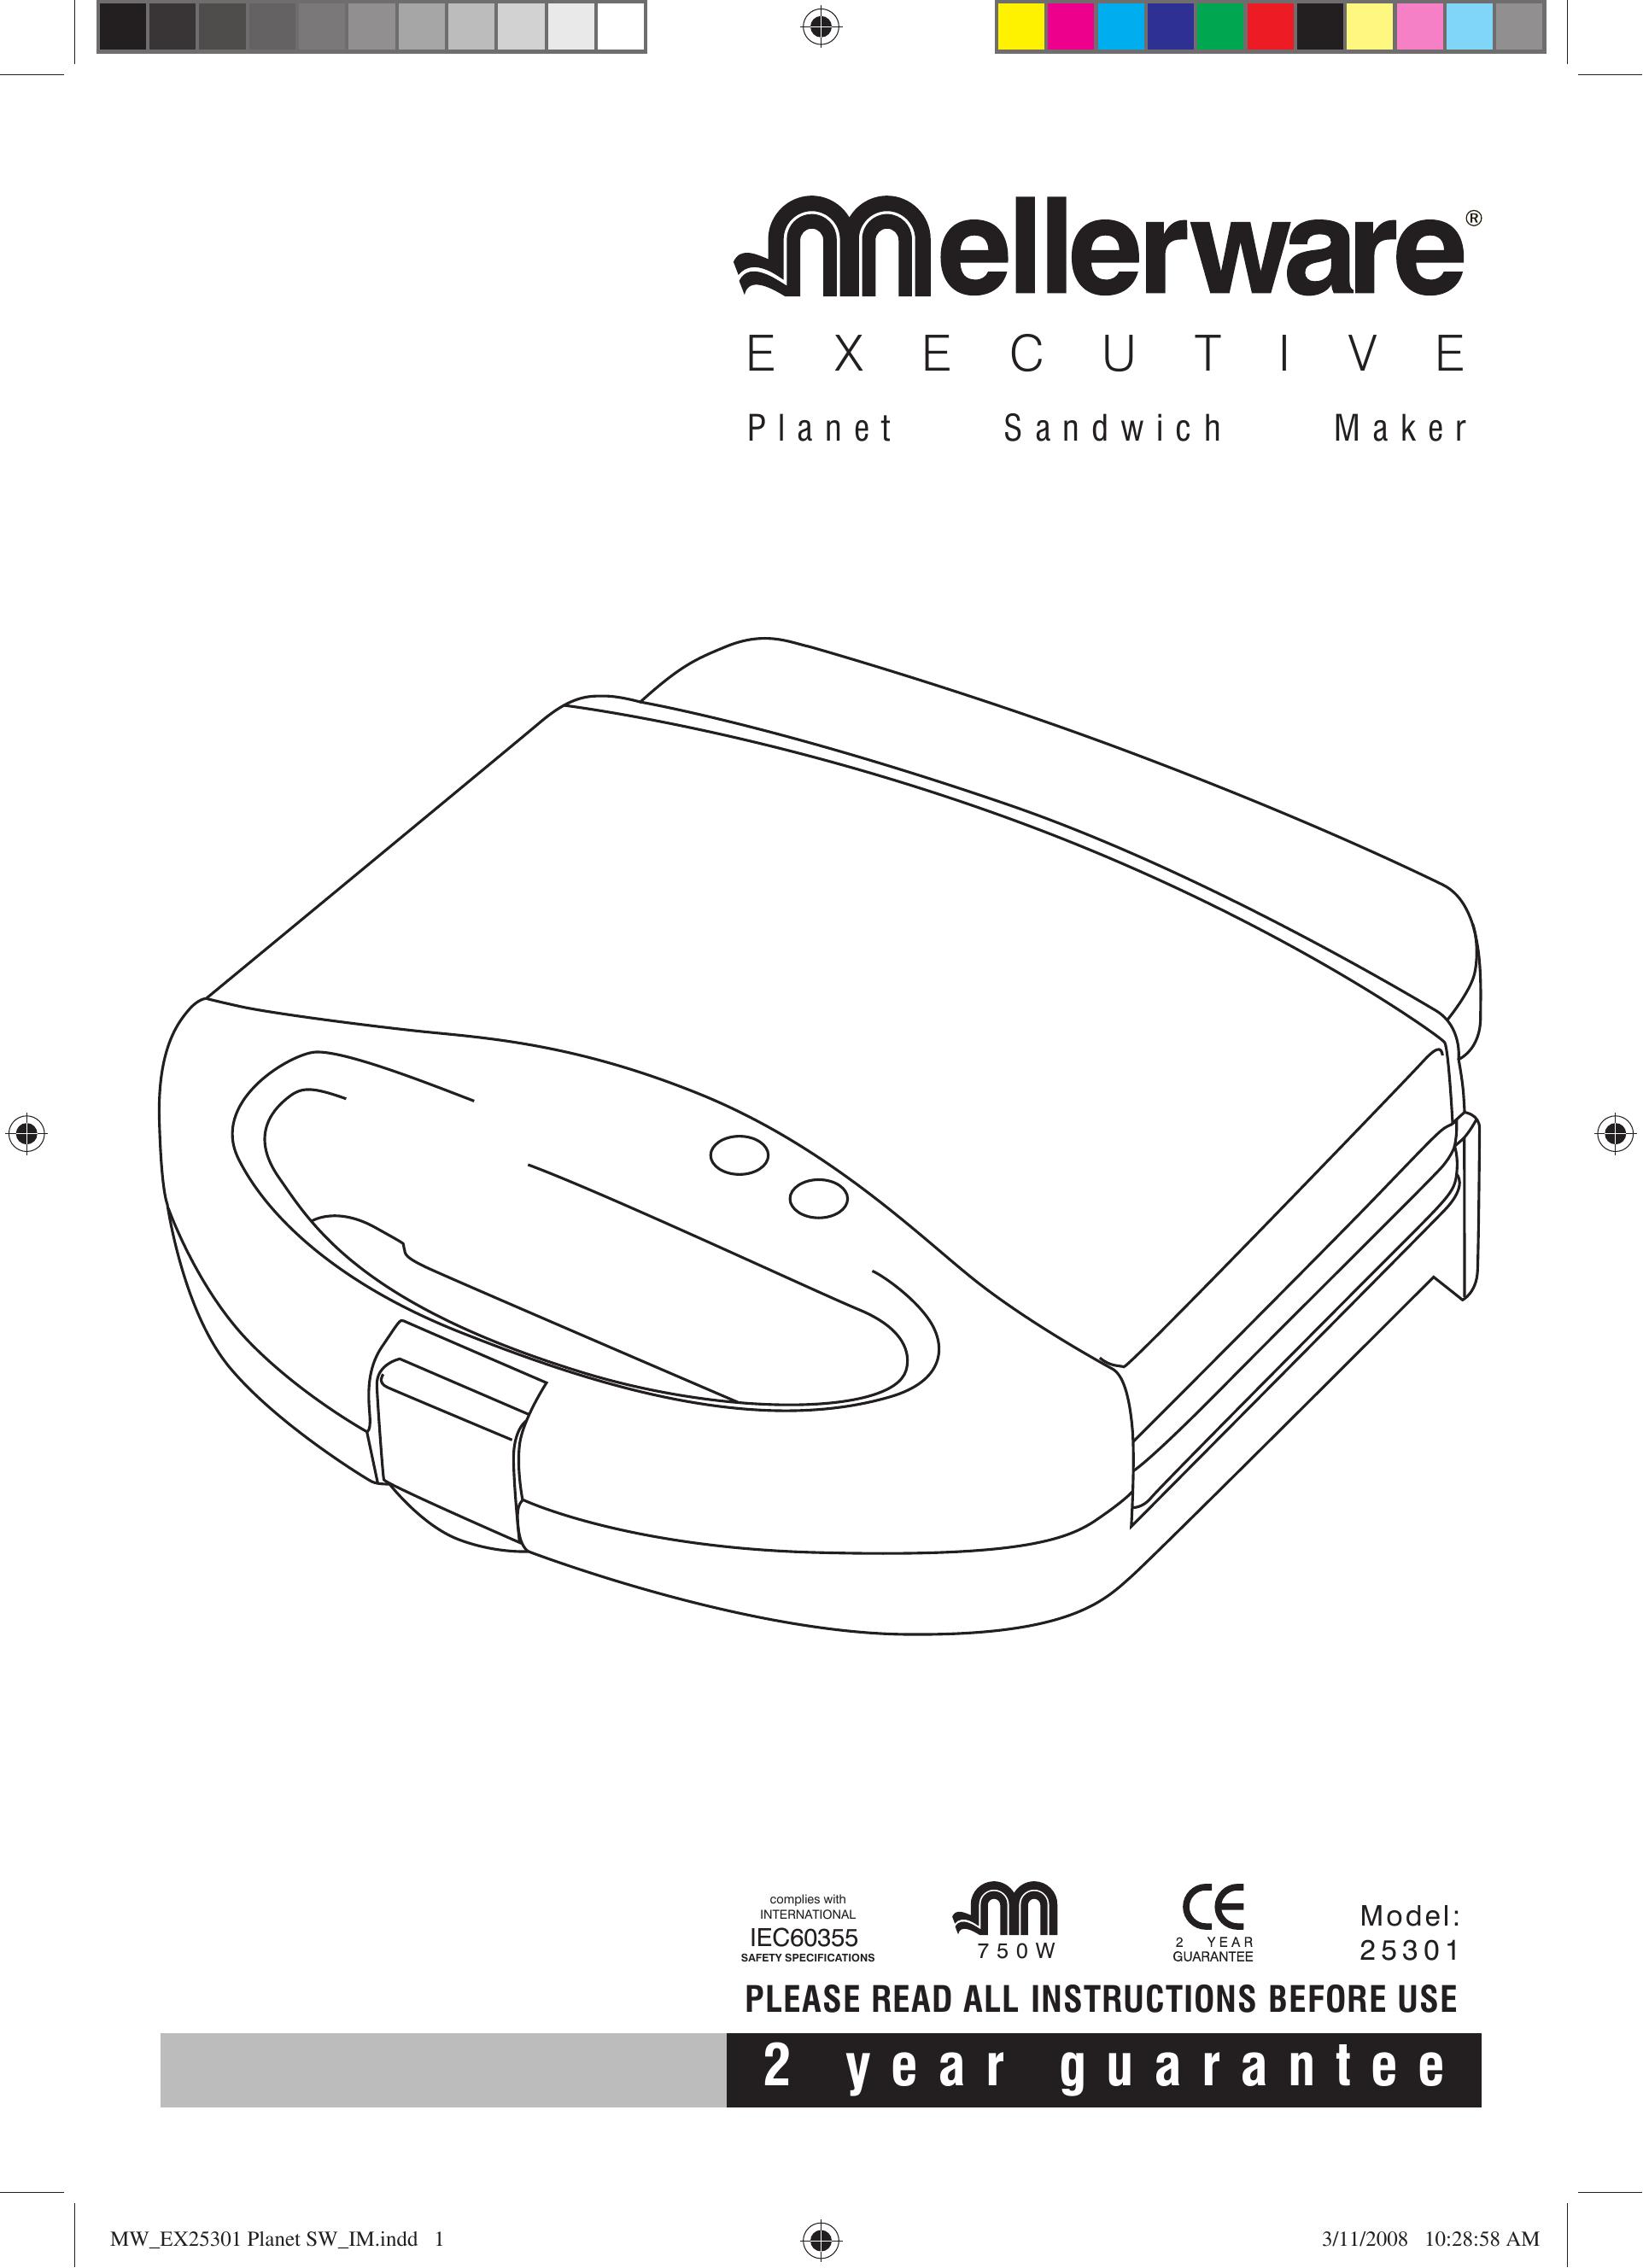 Mellerware 25301 Toaster User Manual